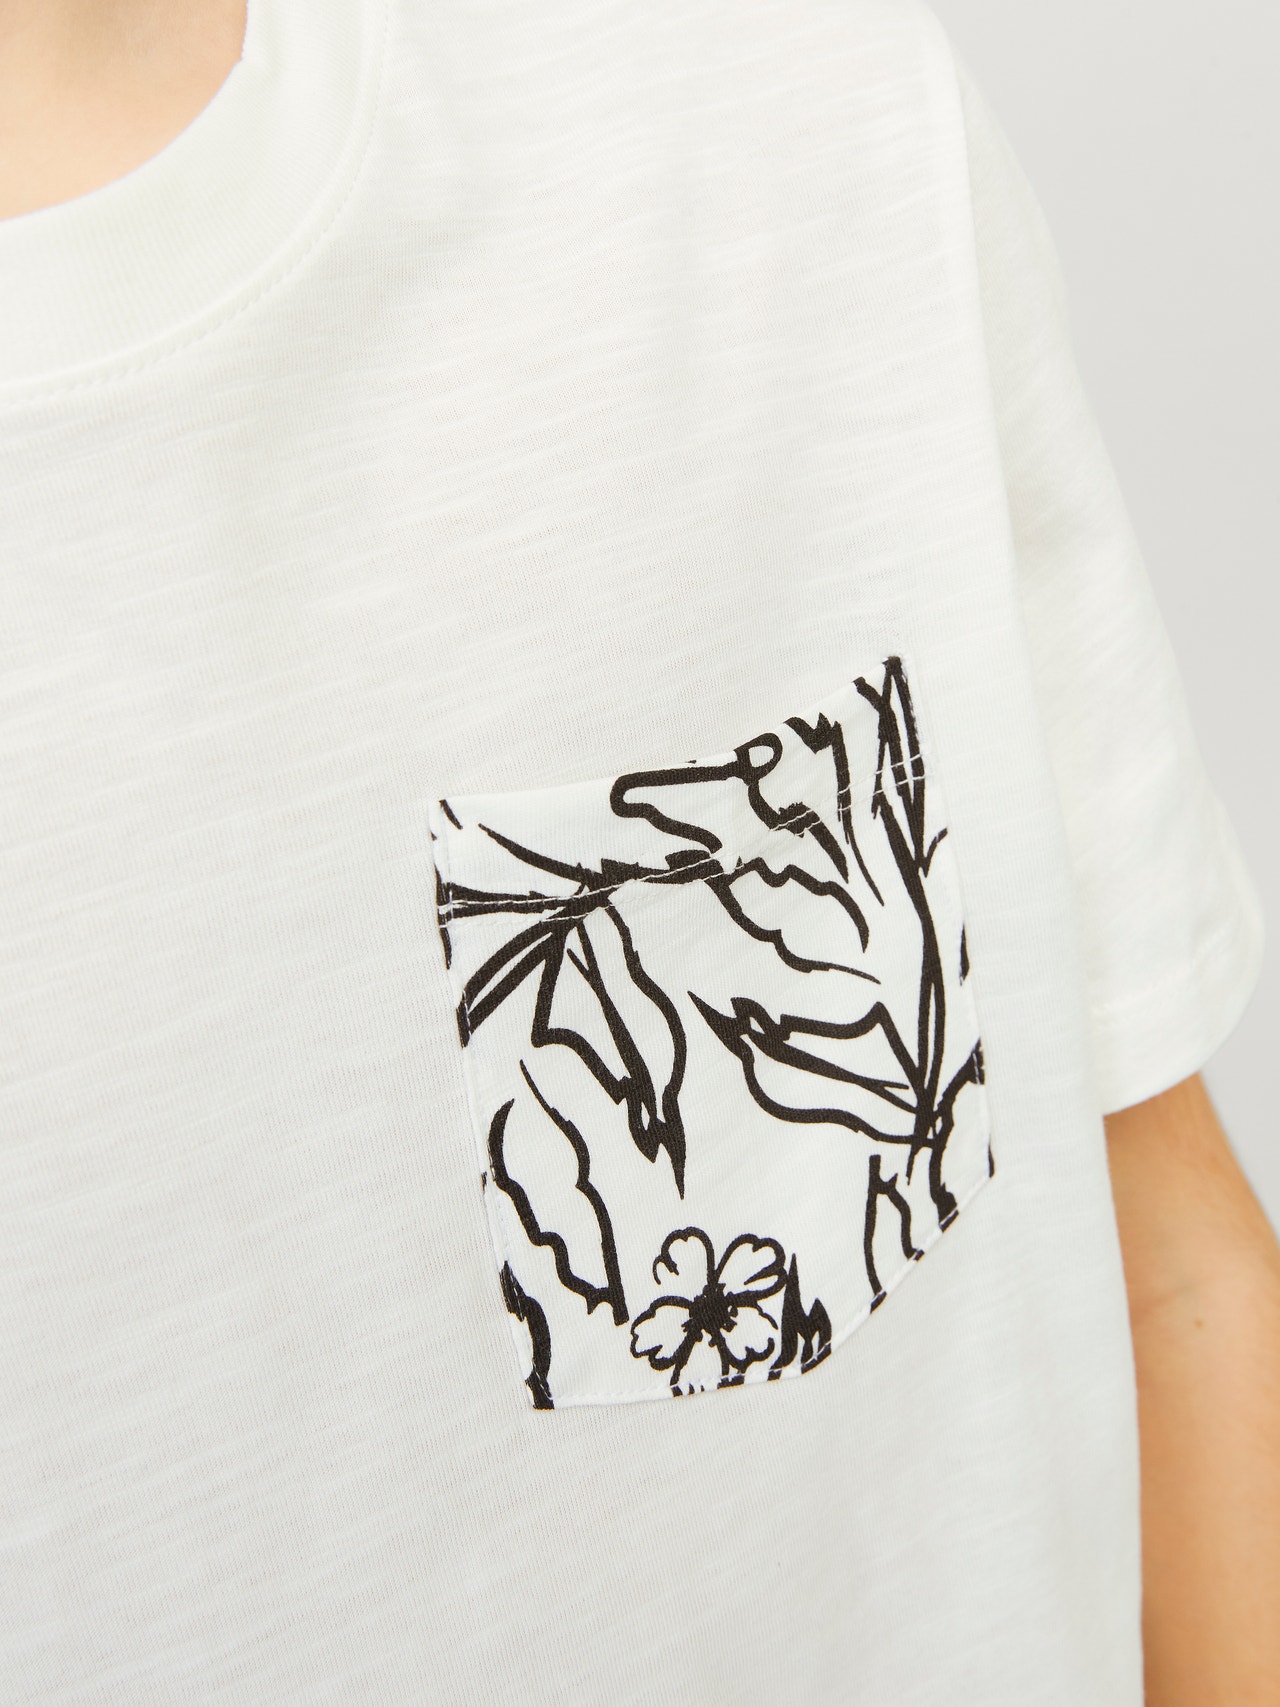 Jack & Jones T-shirt Imprimé Pour les garçons -Cloud Dancer - 12253977